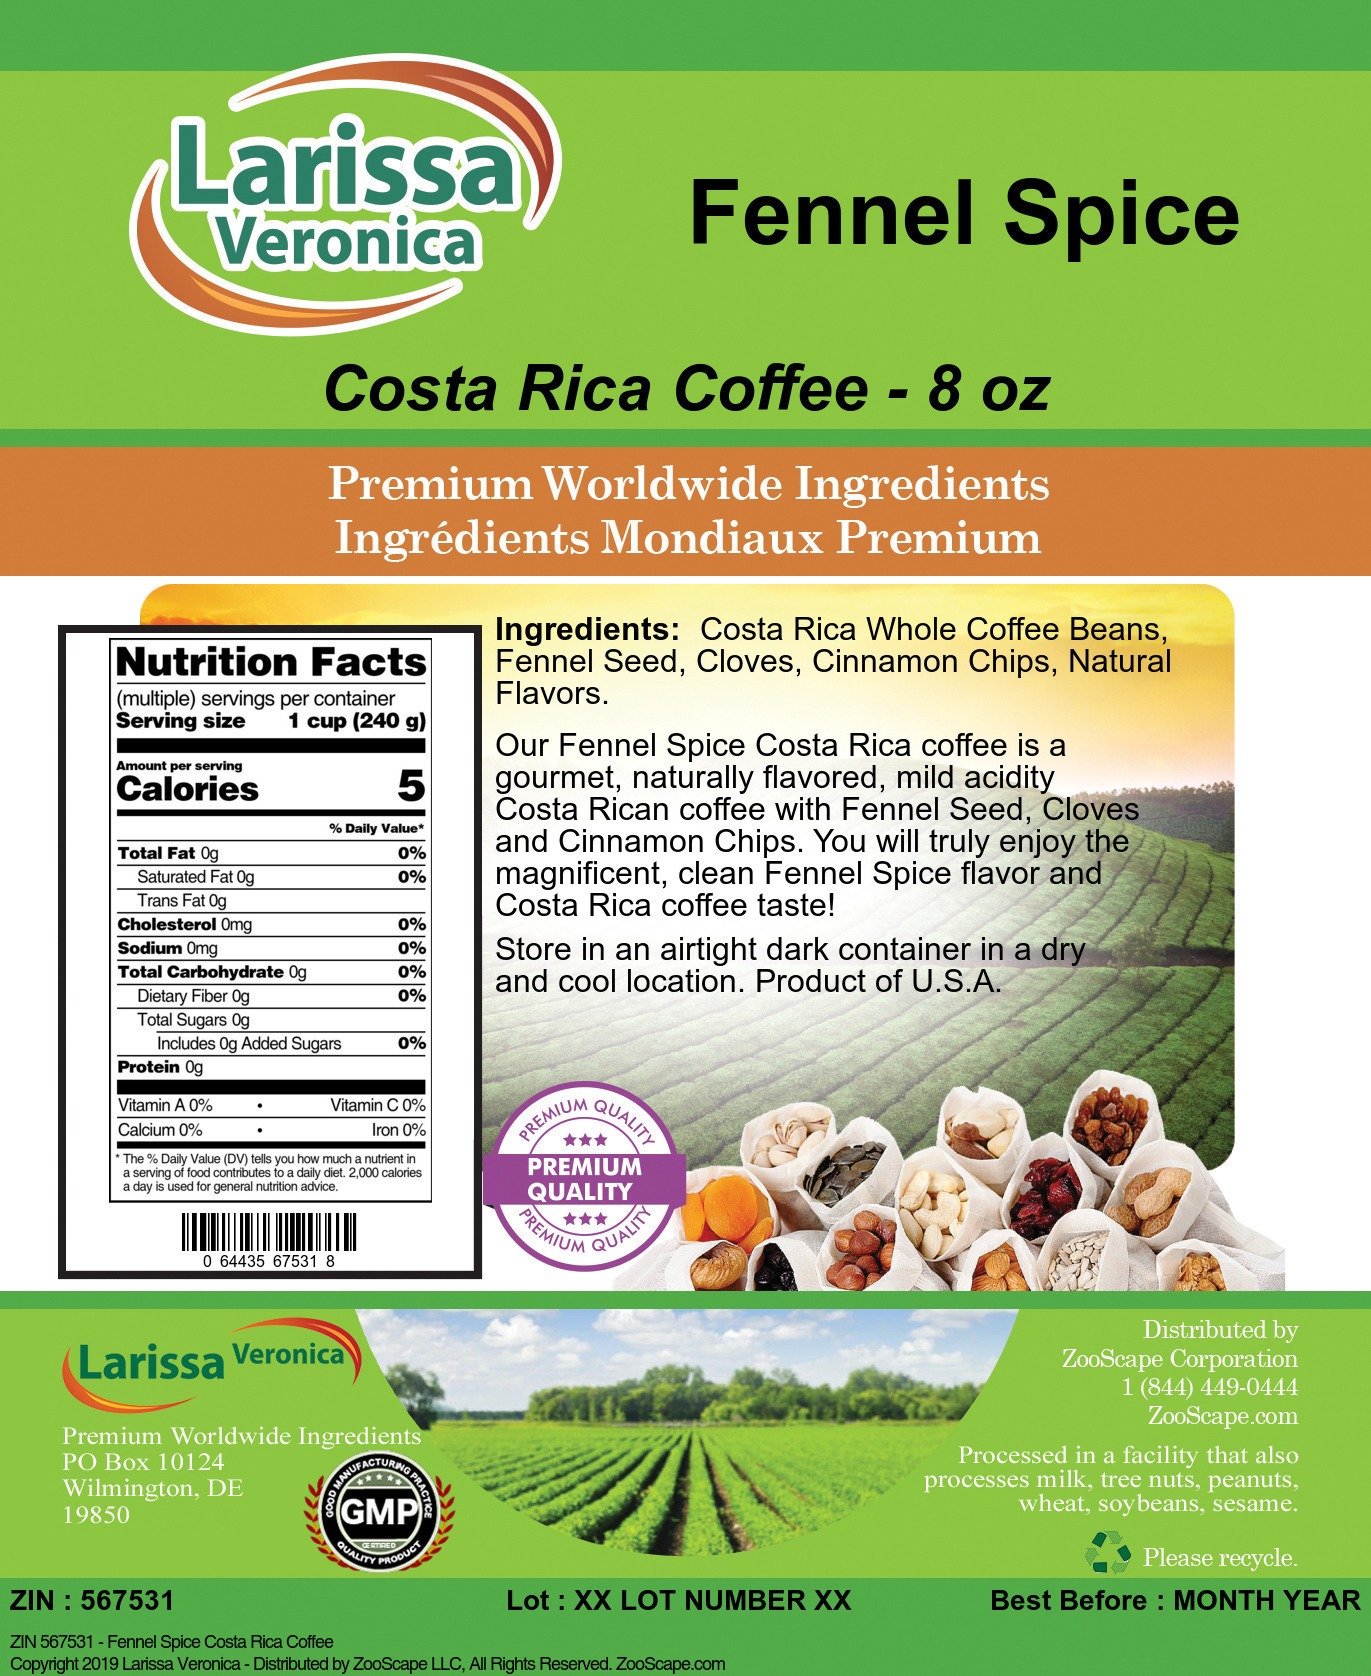 Fennel Spice Costa Rica Coffee - Label